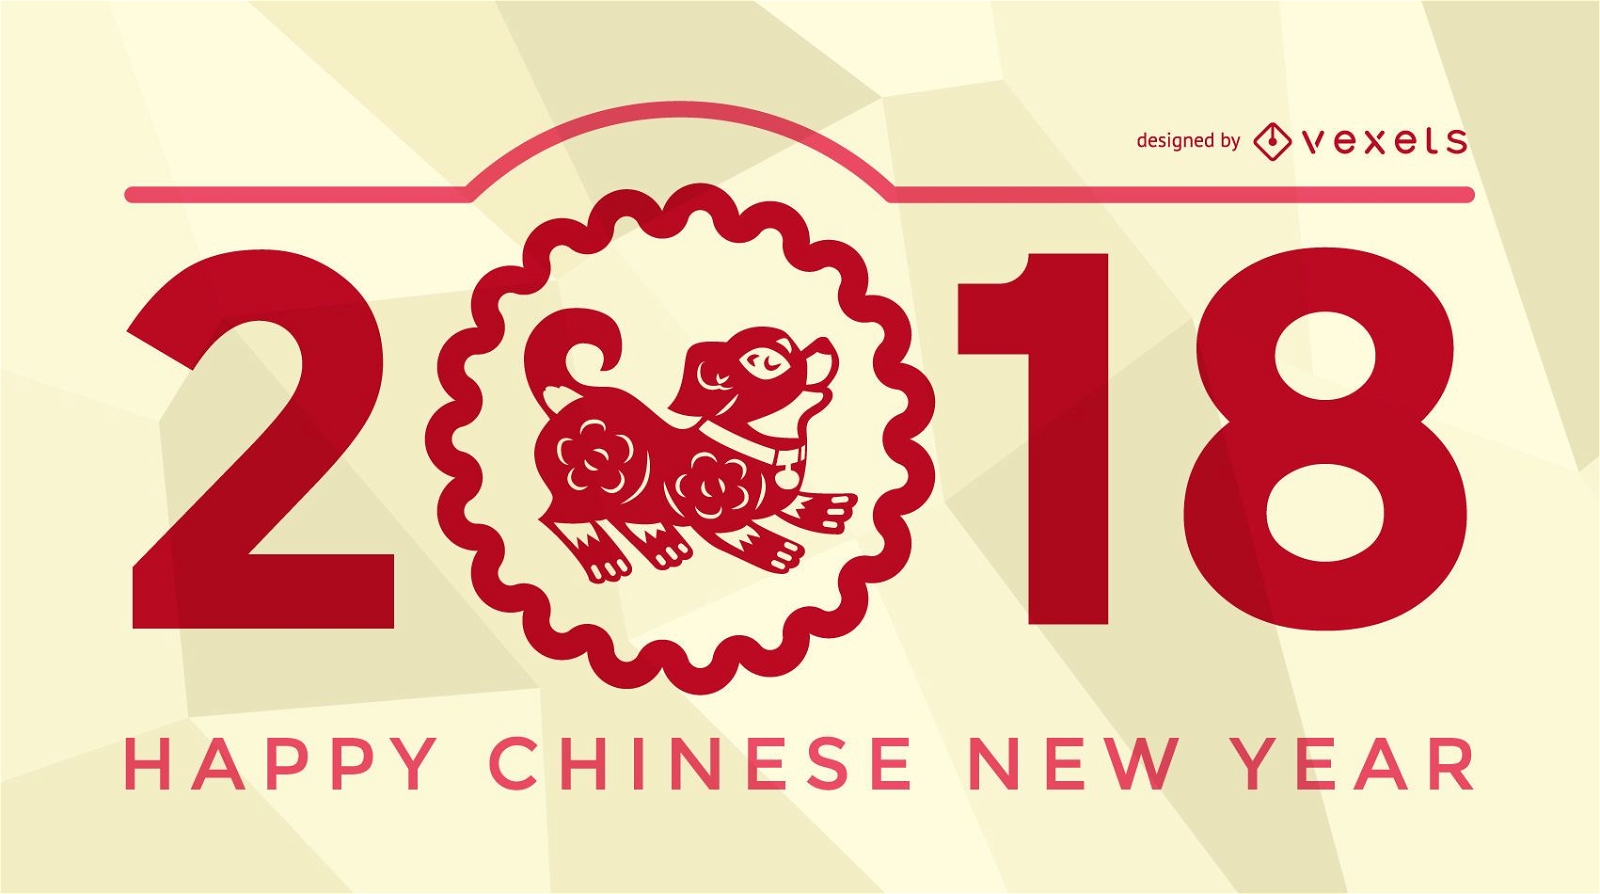 P?ster festivo do ano novo chin?s de 2018